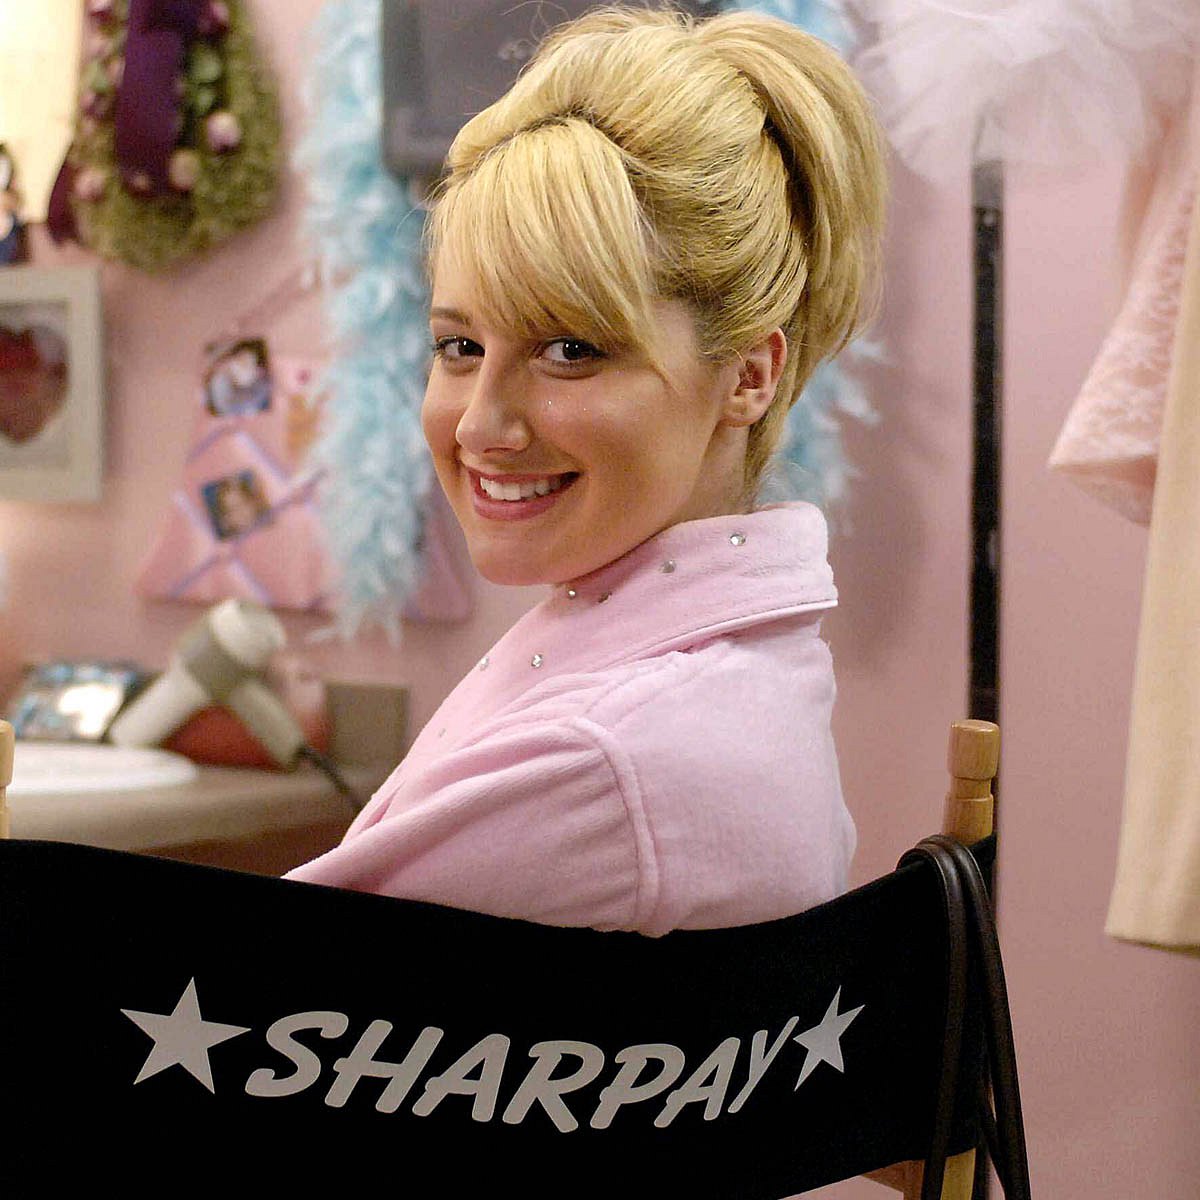 Sharpay aus “High School Musical” ist nicht böse: Sie ist nicht SO überheblich